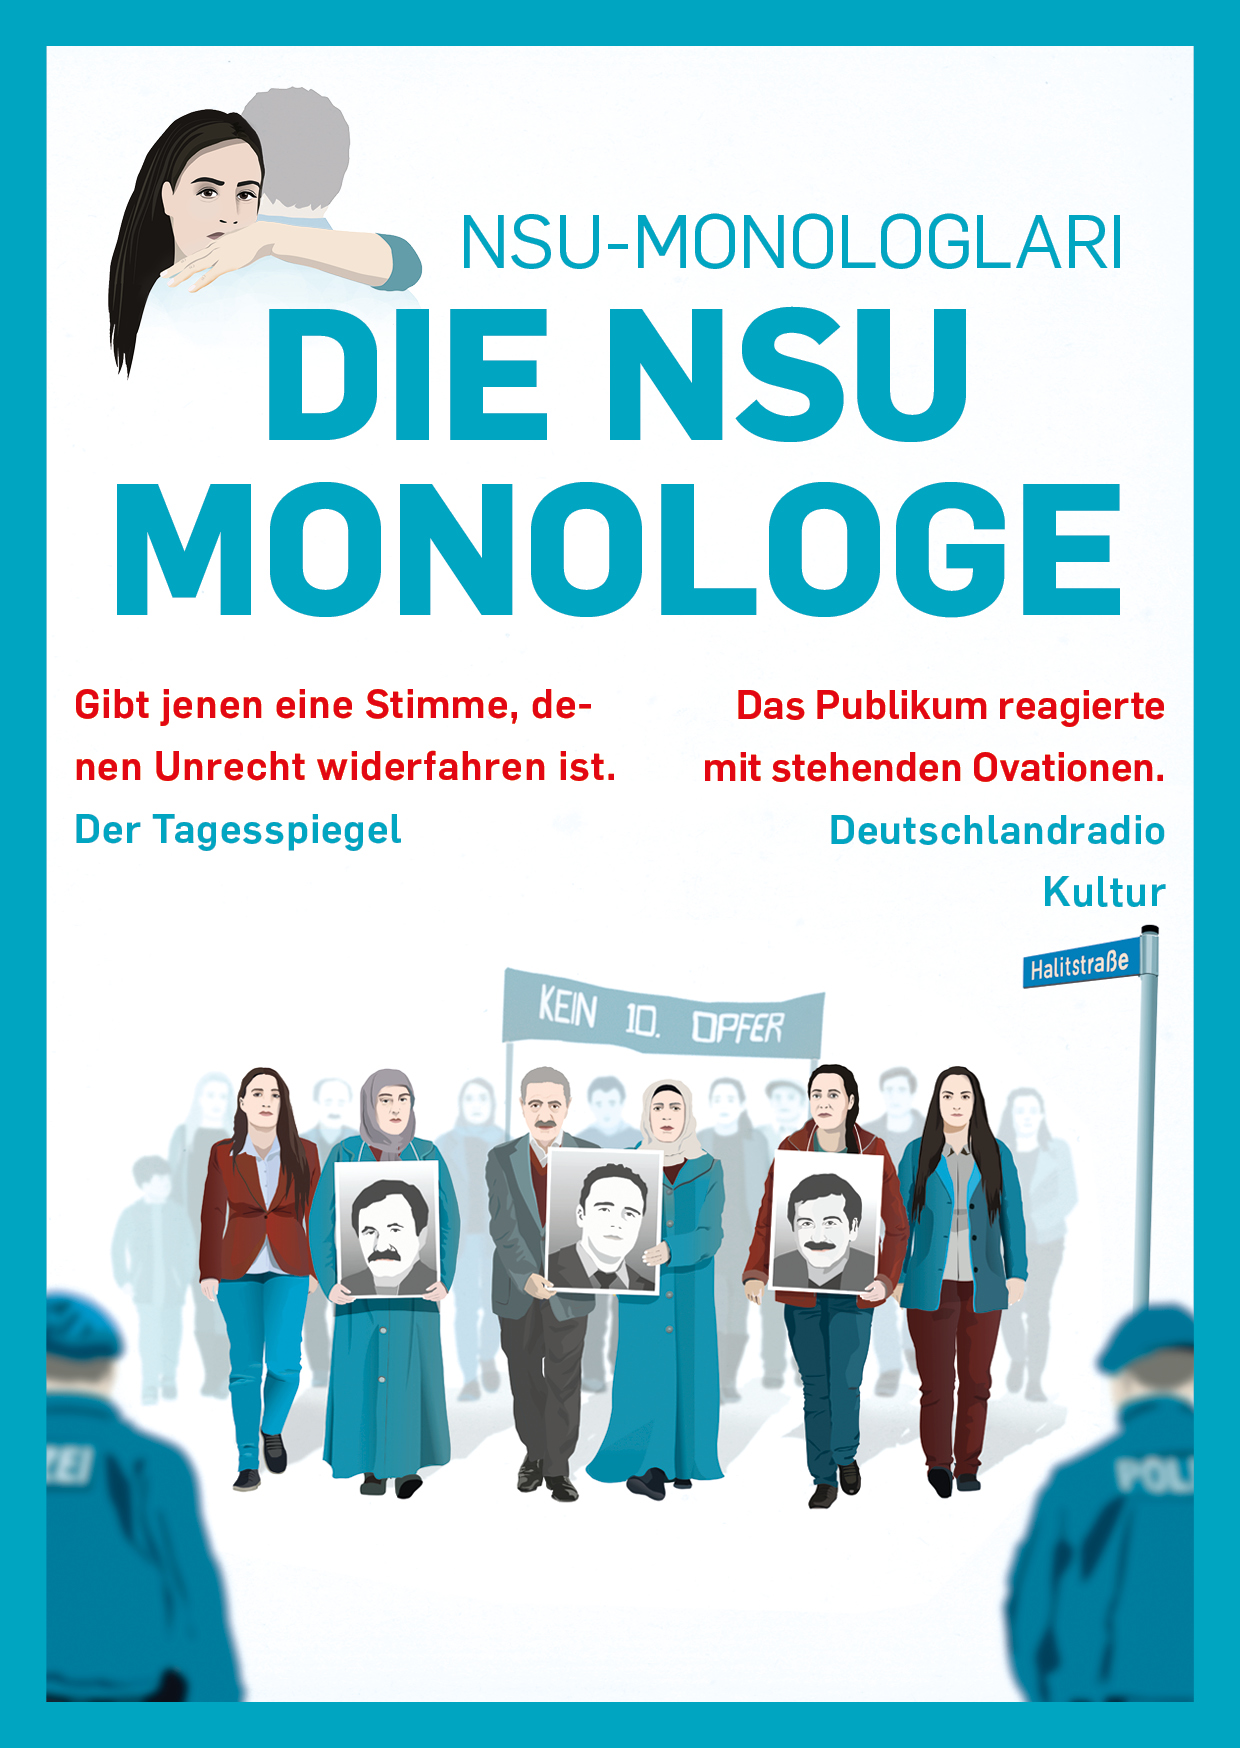 Plakat "Die NSU Monologe"